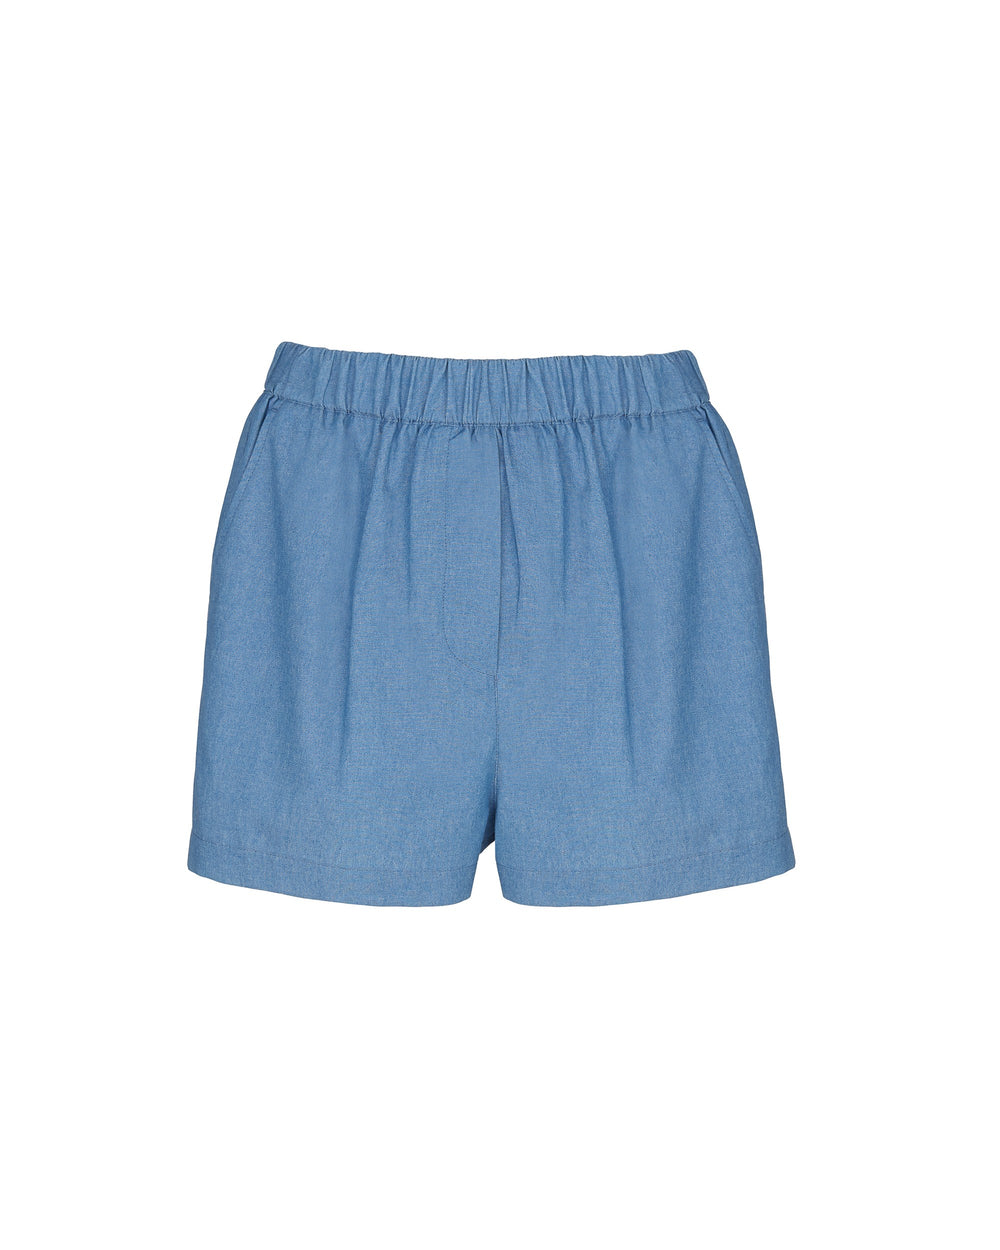 sky blue chambray shorts